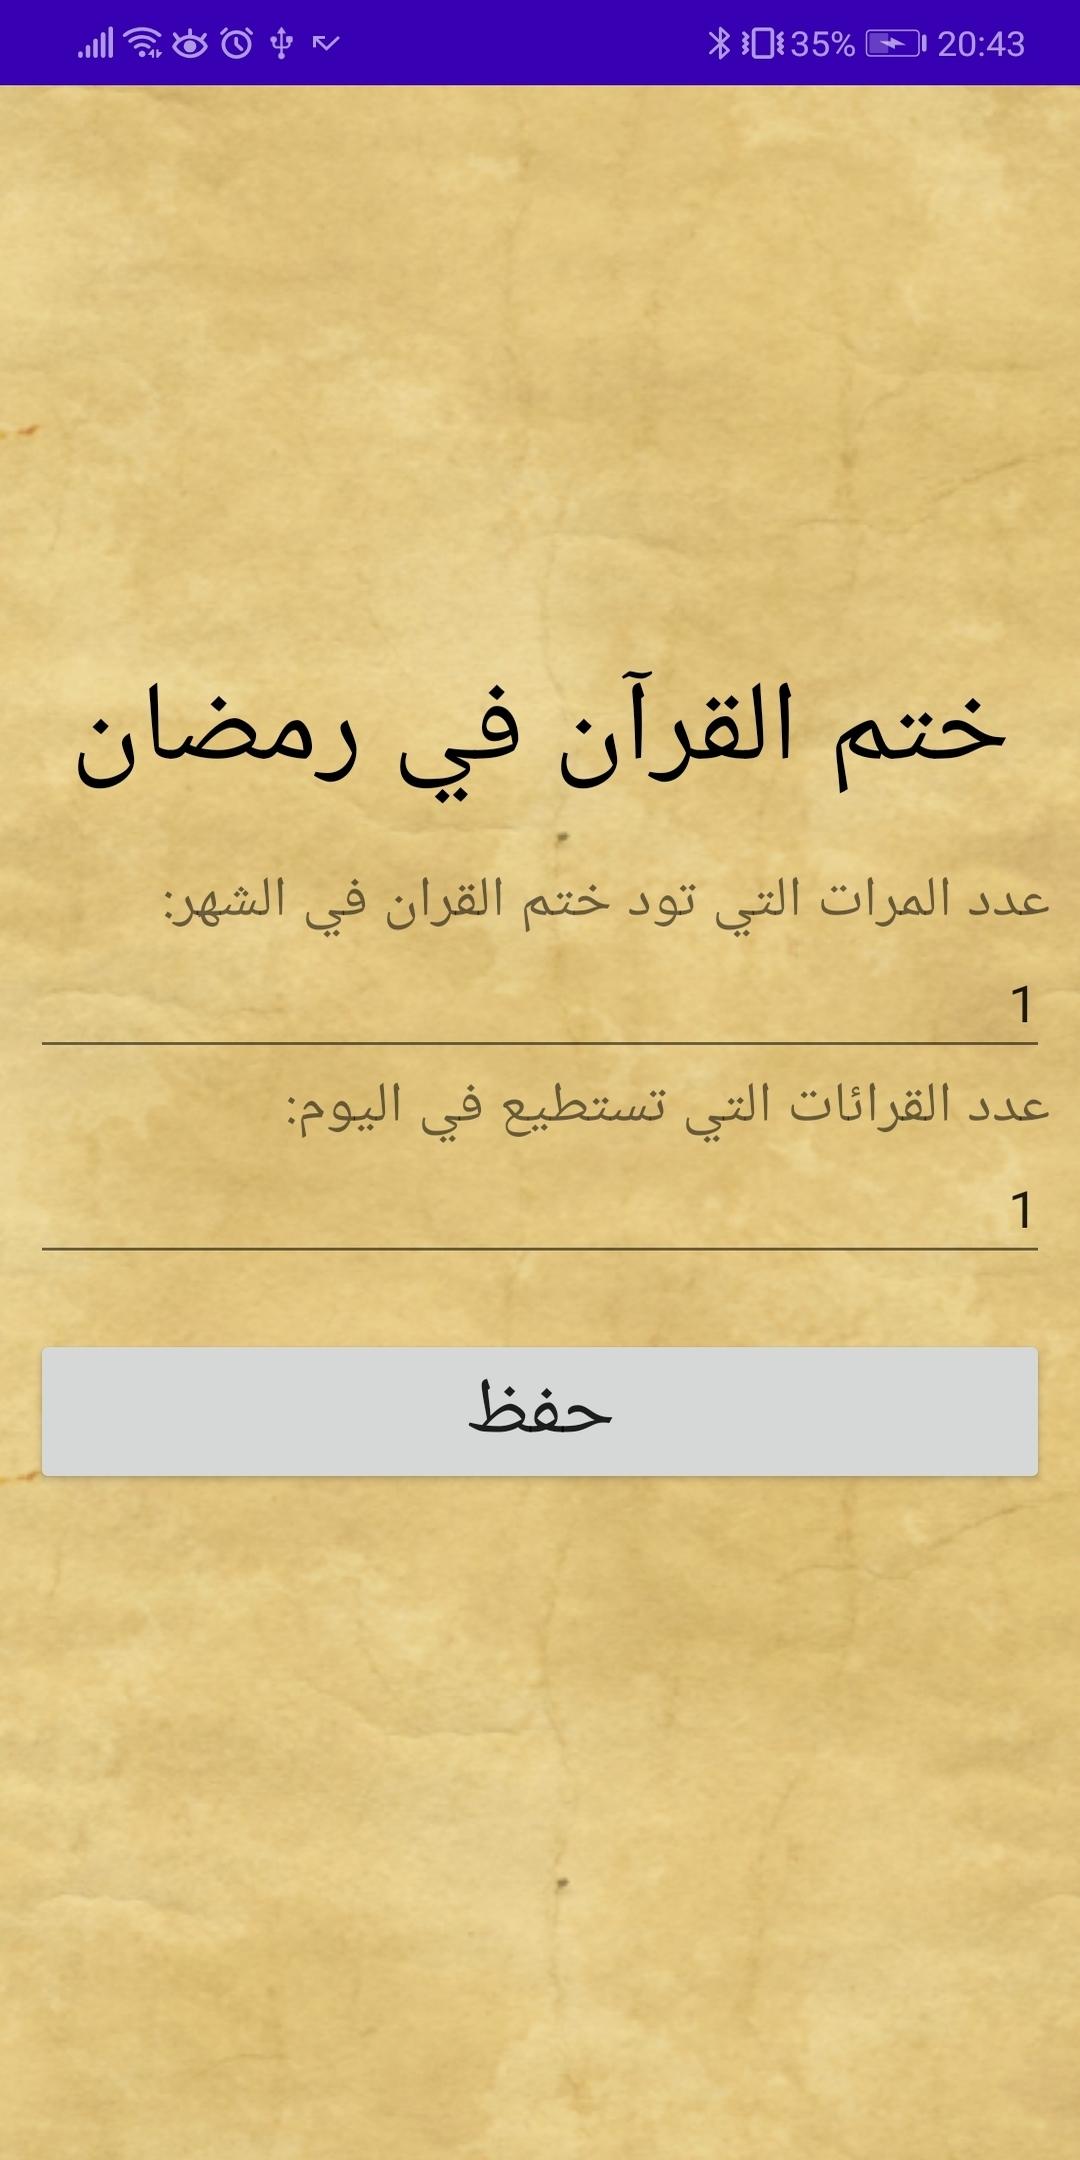 ختم القرآن في رمضان for Android - APK Download